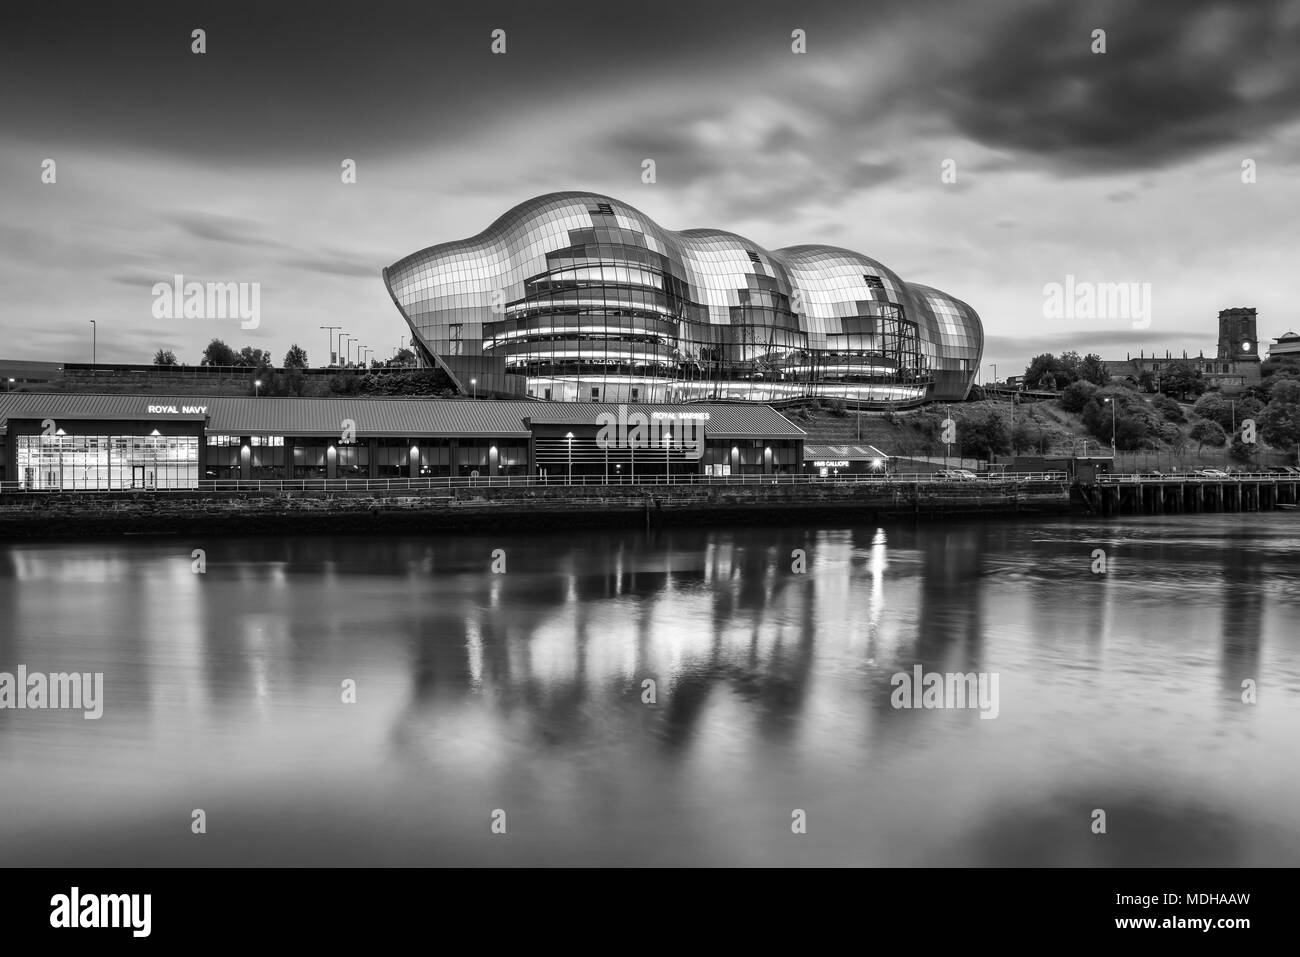 Konzerthalle Sage Gateshead Reflexionen in den Fluss Tyne; Gateshead, Tyne und Wear, England Stockfoto